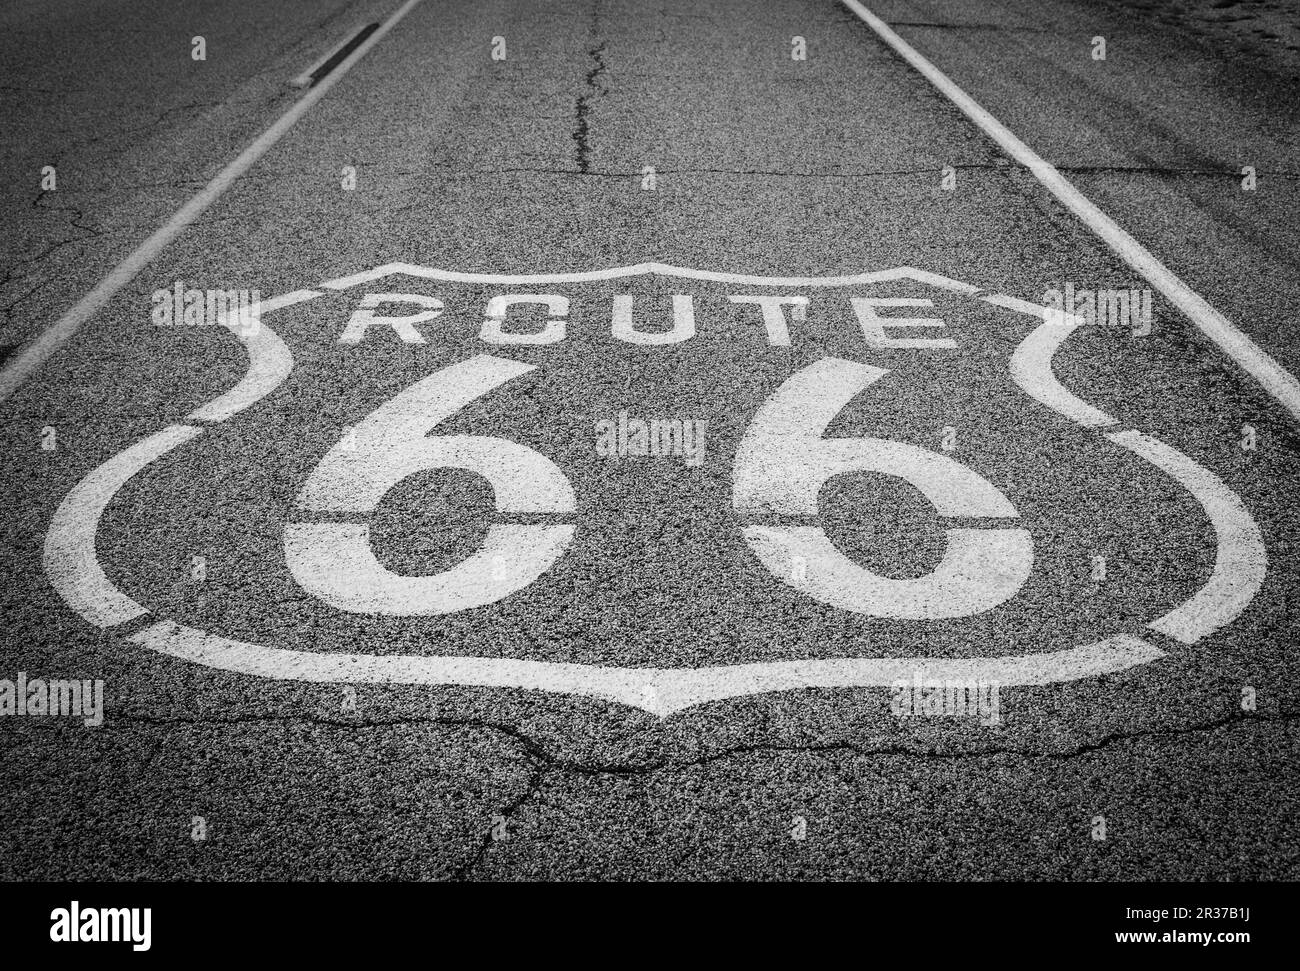 Célèbre Route 66 vue sur la route dans le désert californien Banque D'Images